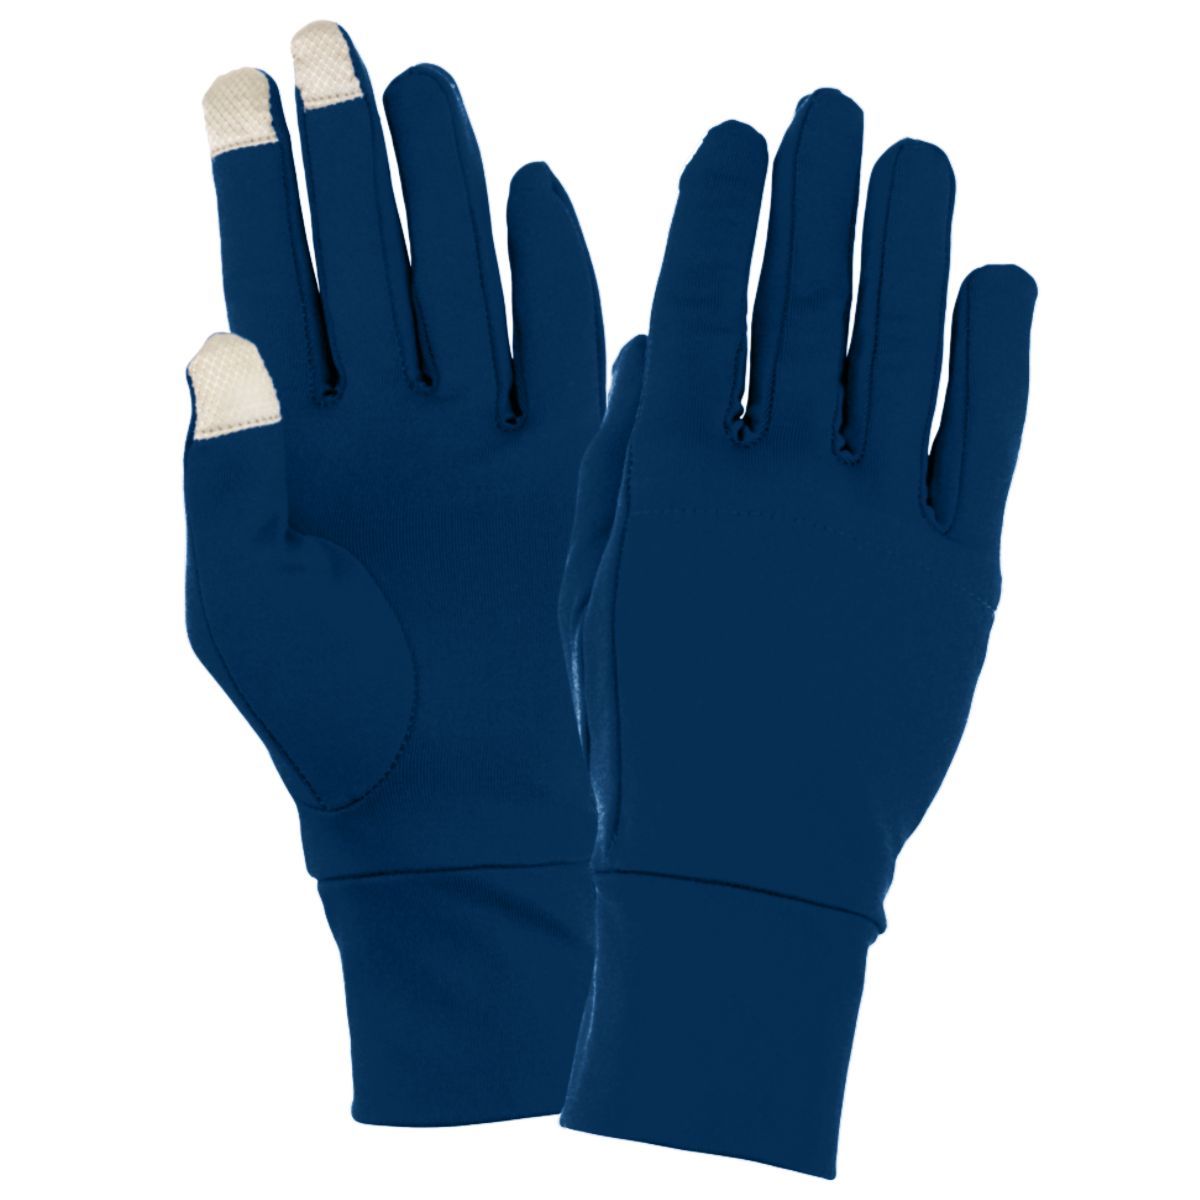 Sample Tech Gloves